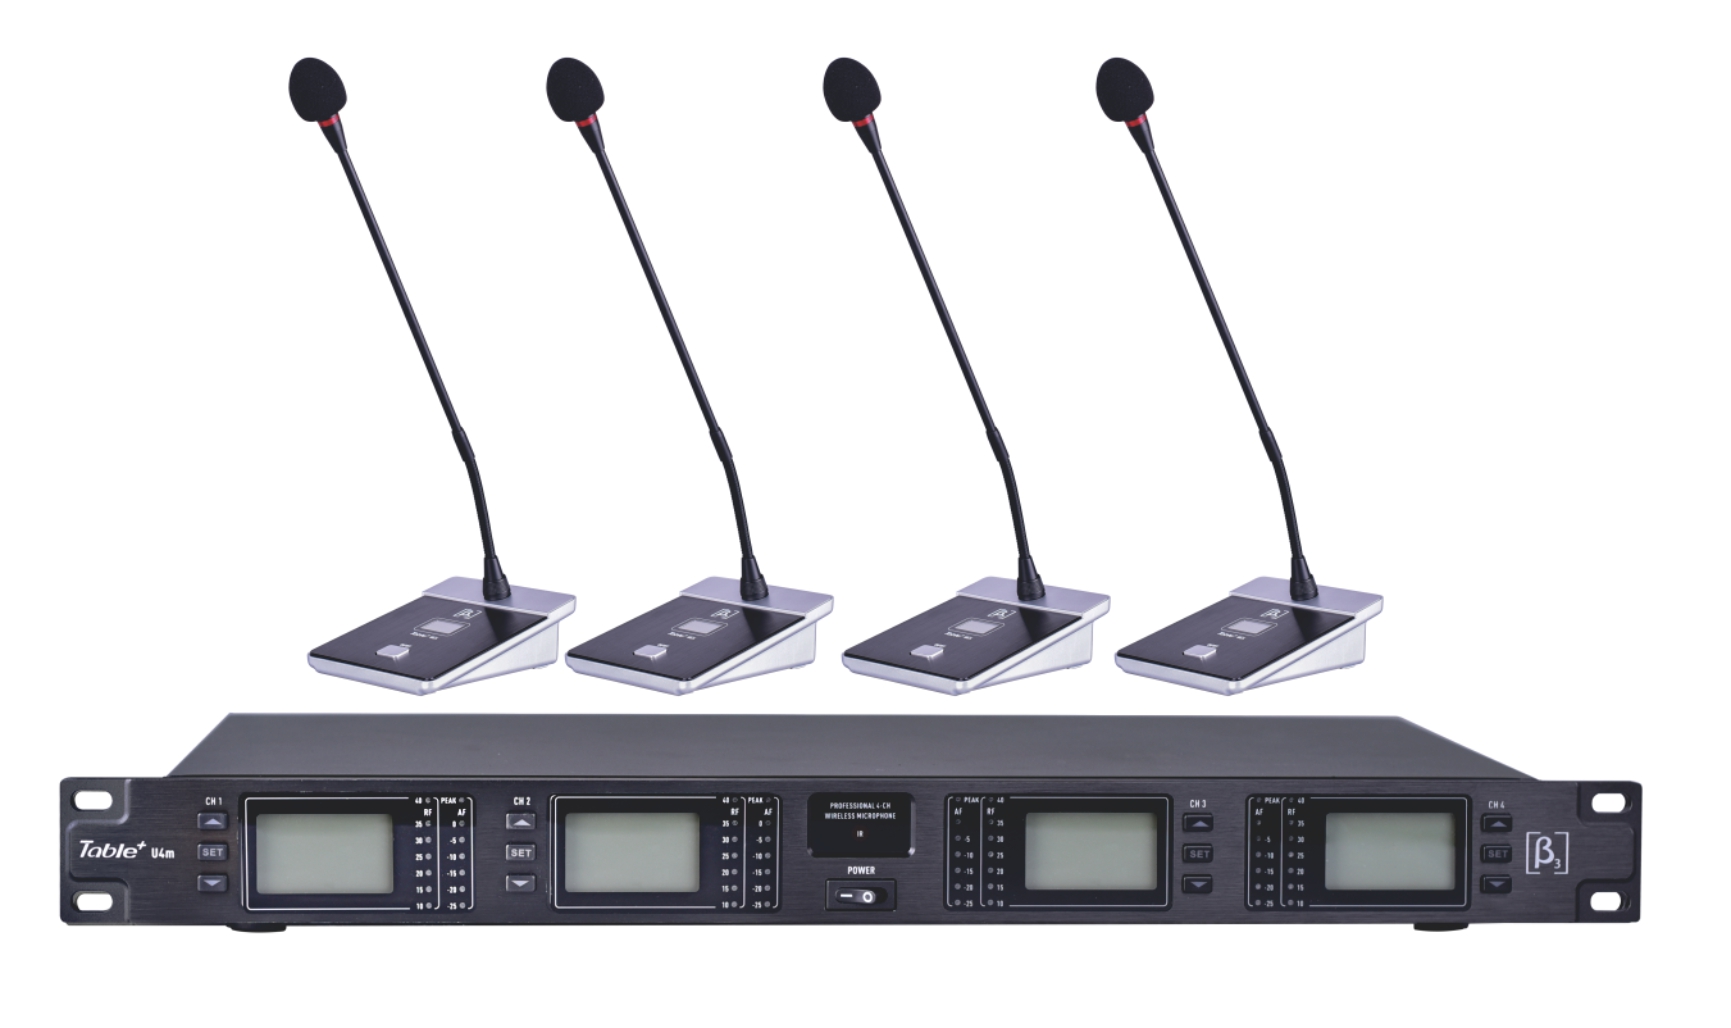 Table+U4m - 四路无线会议系统